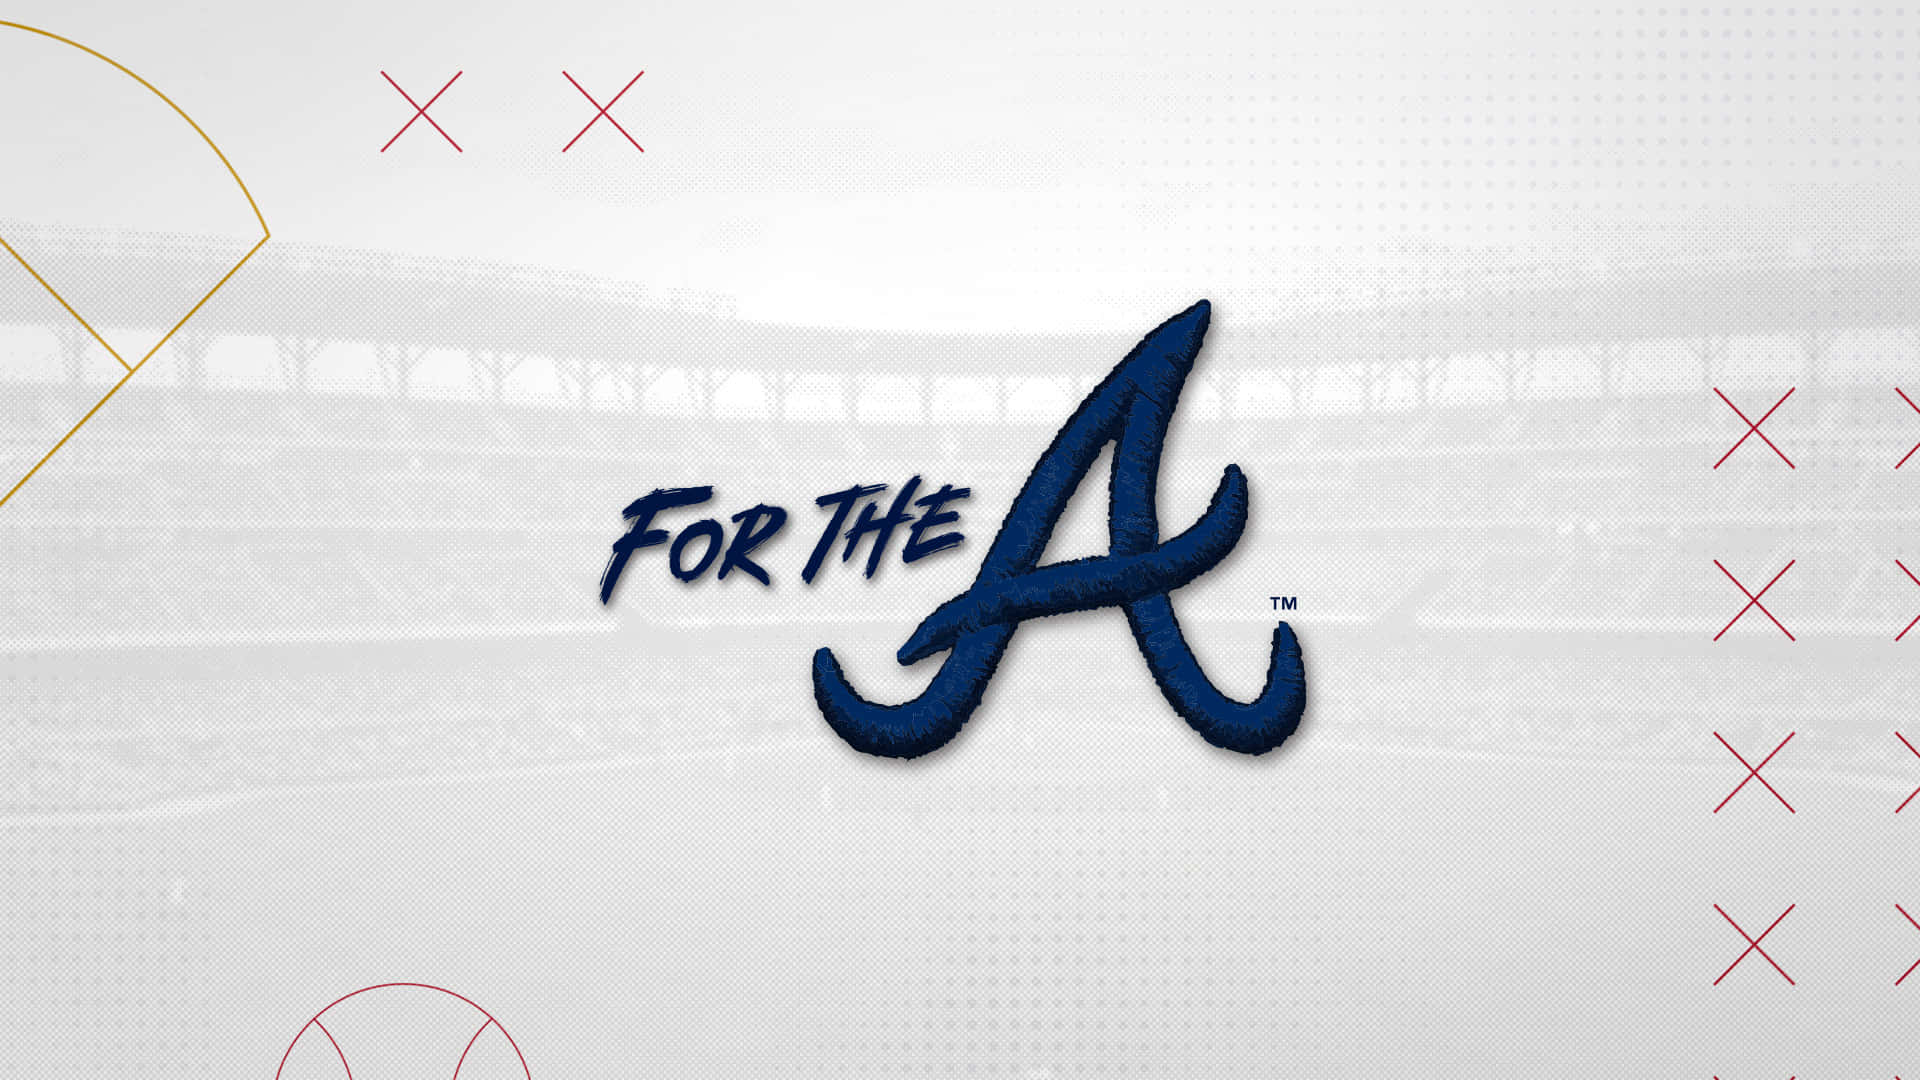 !Vis din støtte til Atlanta Braves med denne skrivebordsbaggrund! Wallpaper